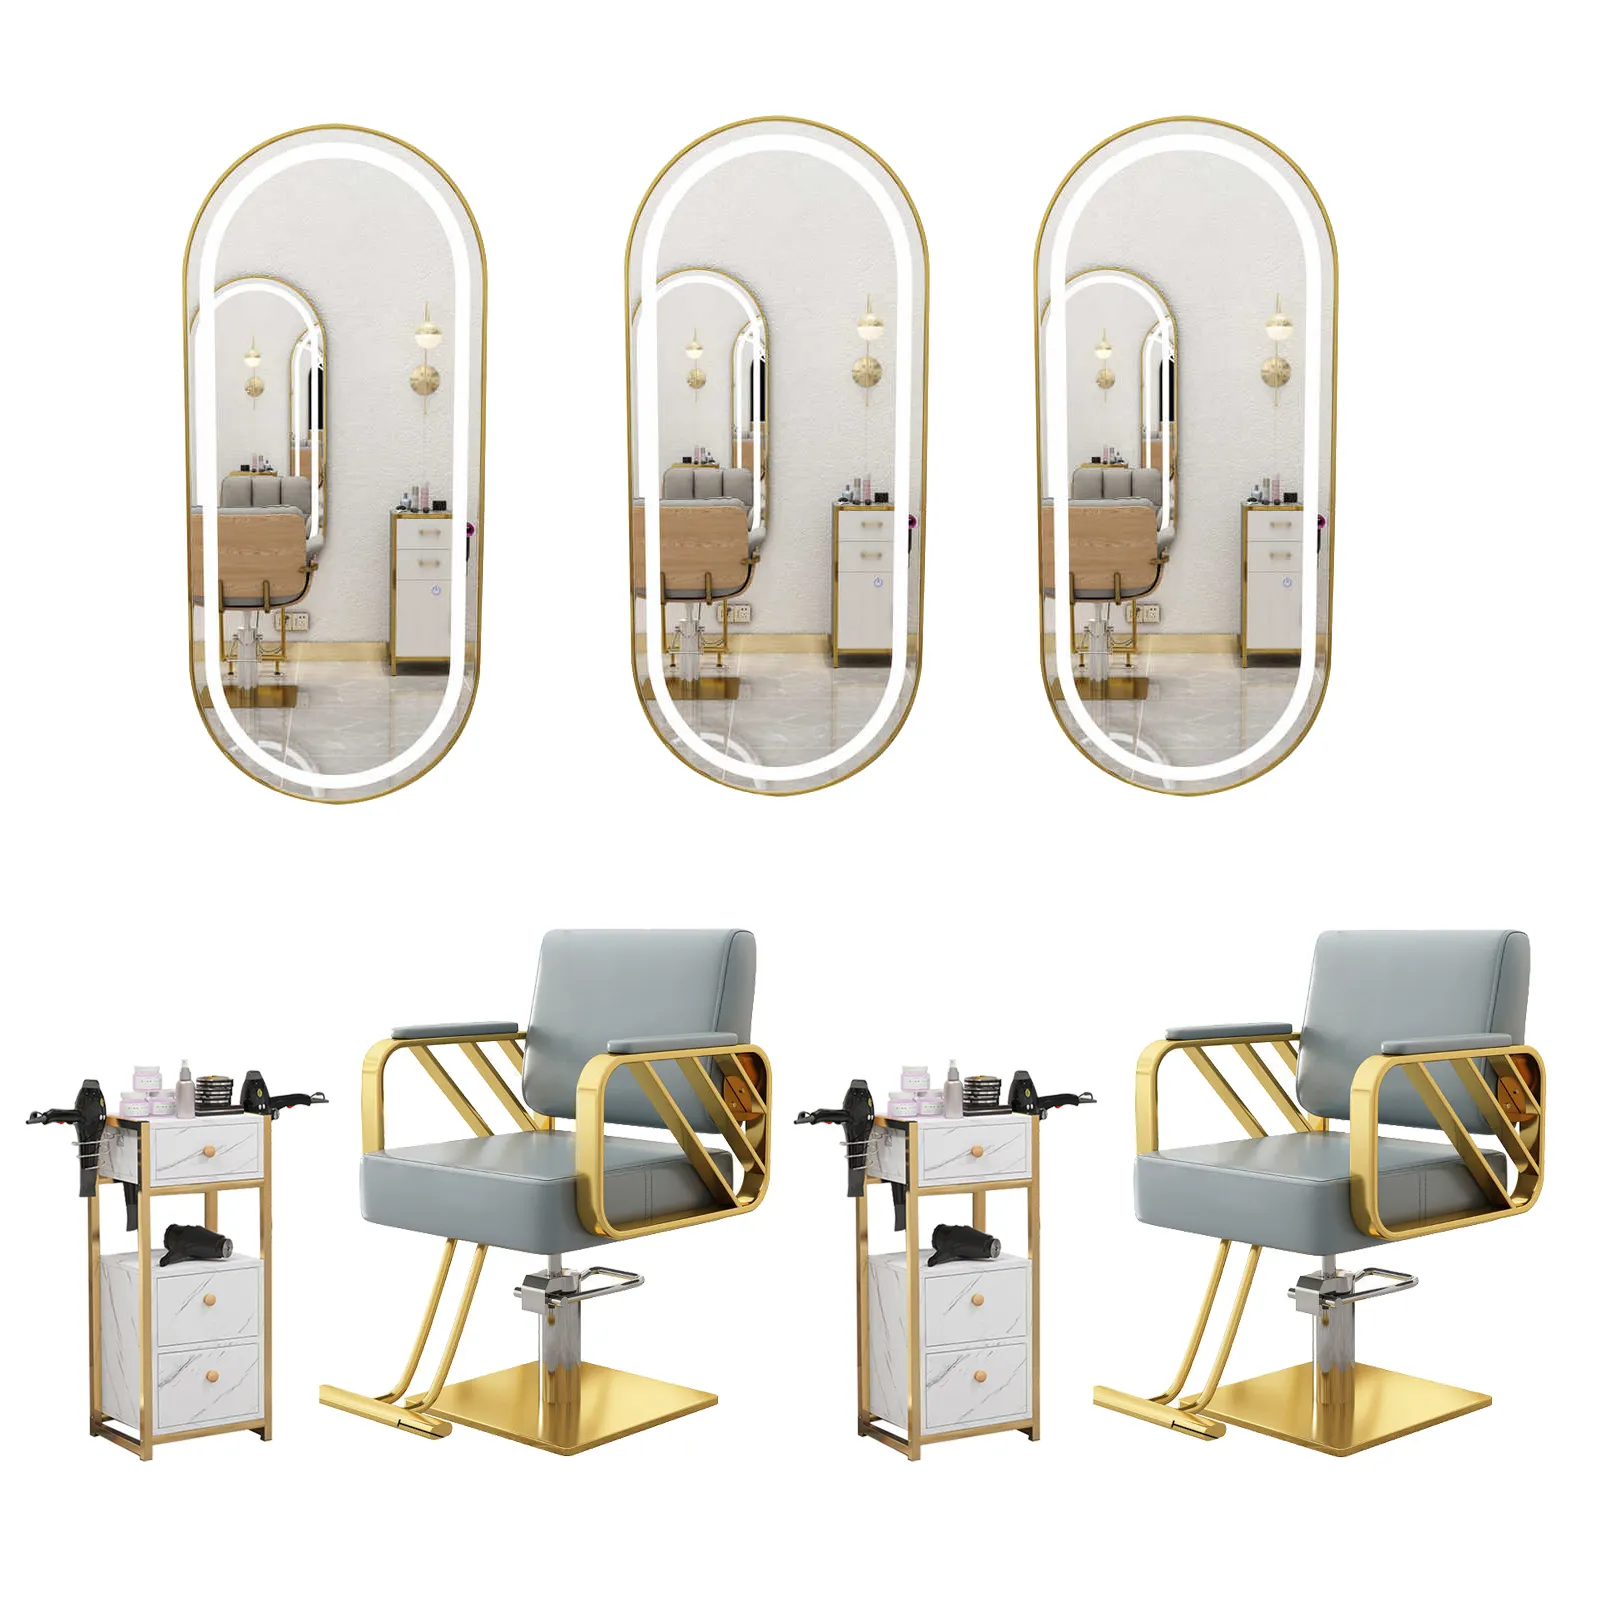 Meiyi nouvelle arrivée ensemble de meubles de salon équipement miroir de beauté station salon de coiffure armoire de barbier noir chaise de barbier